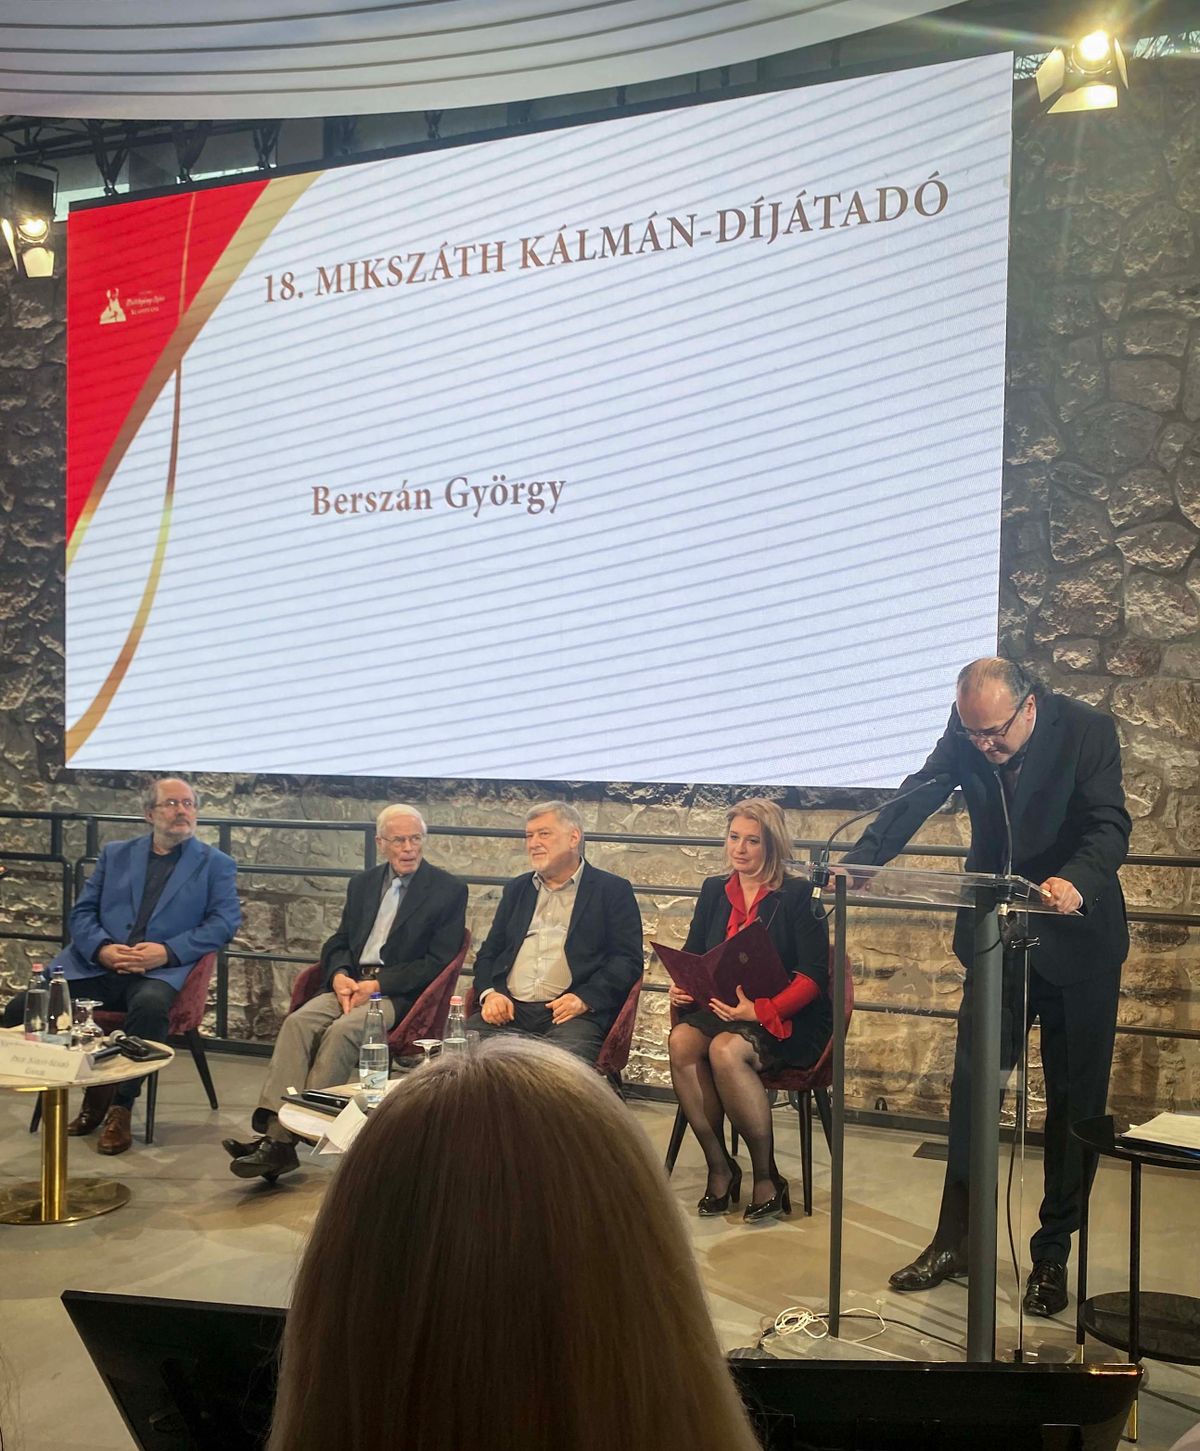 Mikszáth-díj átadása Berszán György